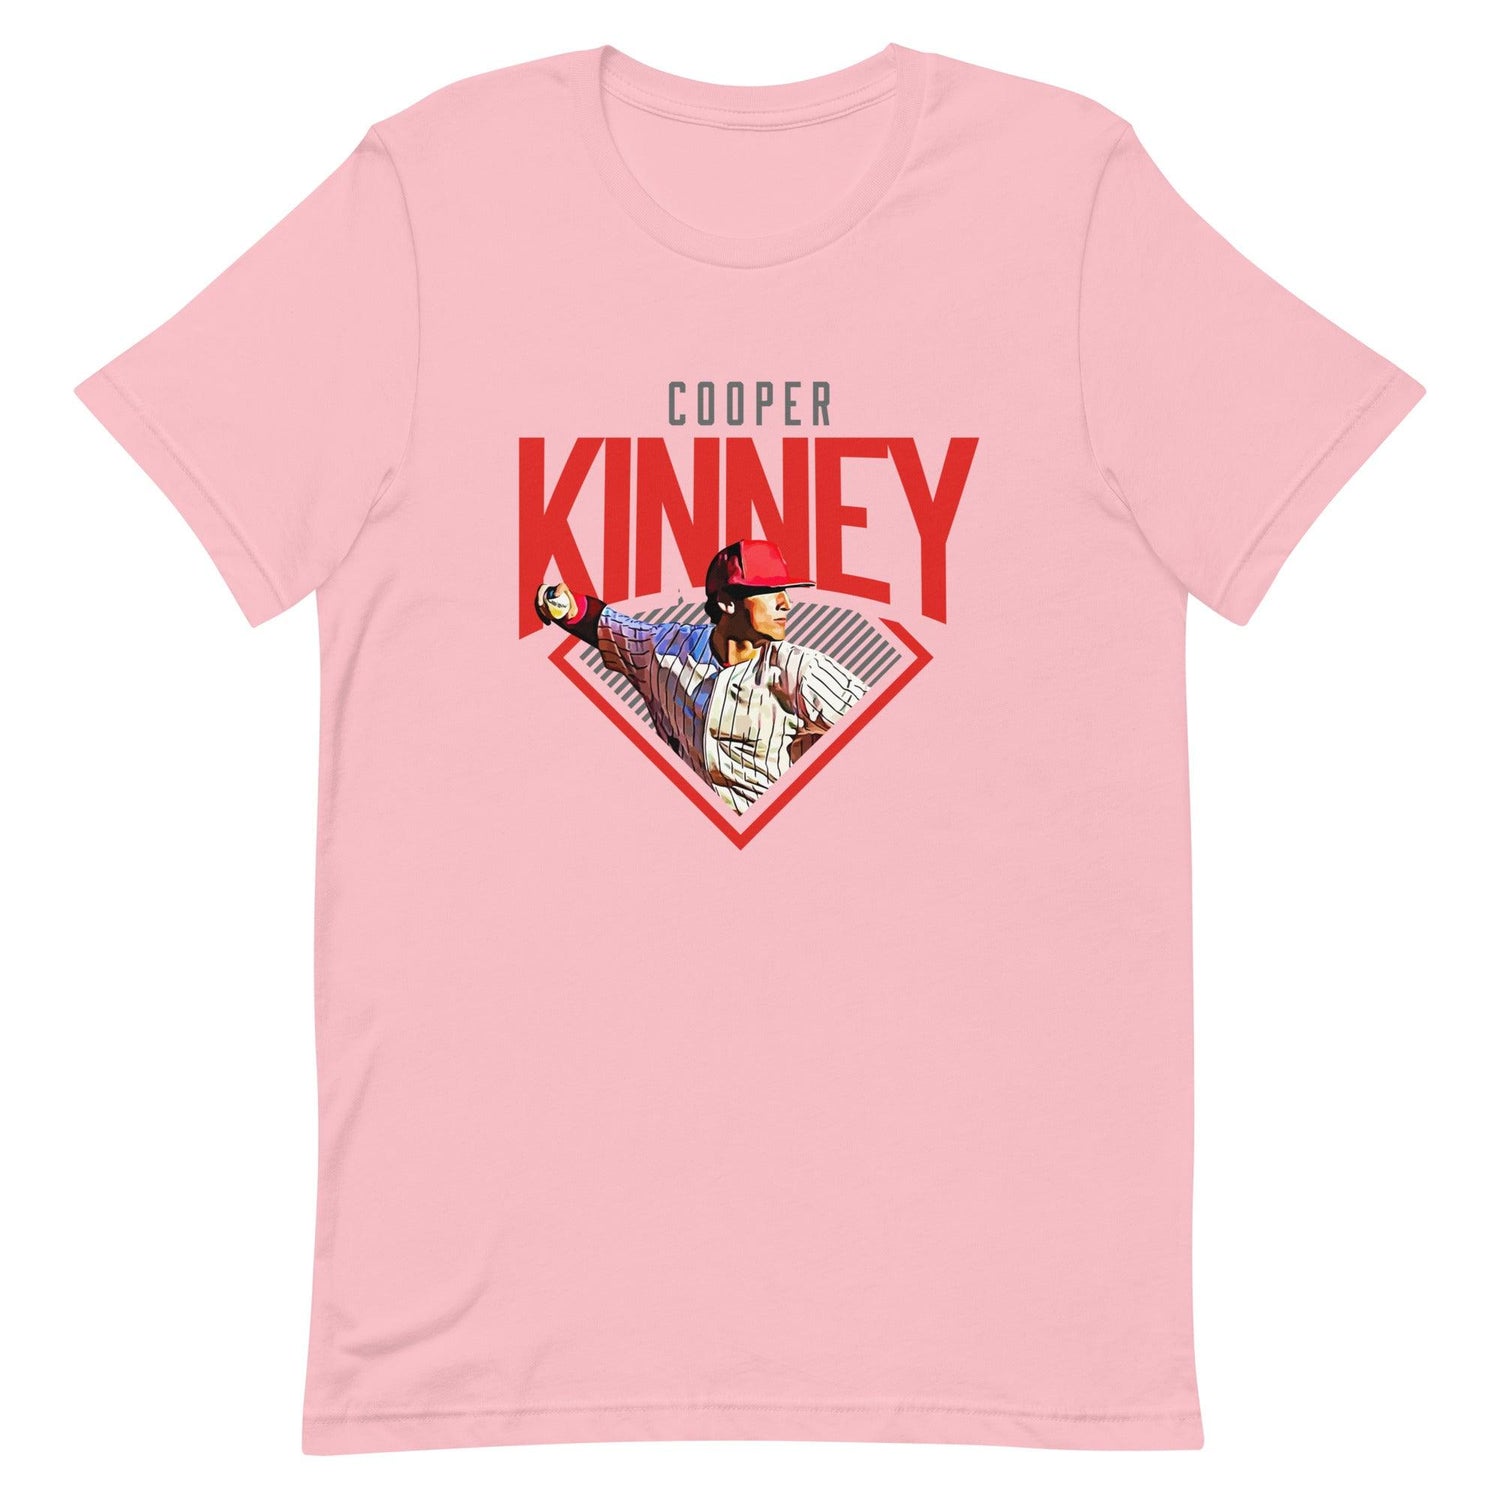 Cooper Kinney "Diamond" t-shirt - Fan Arch